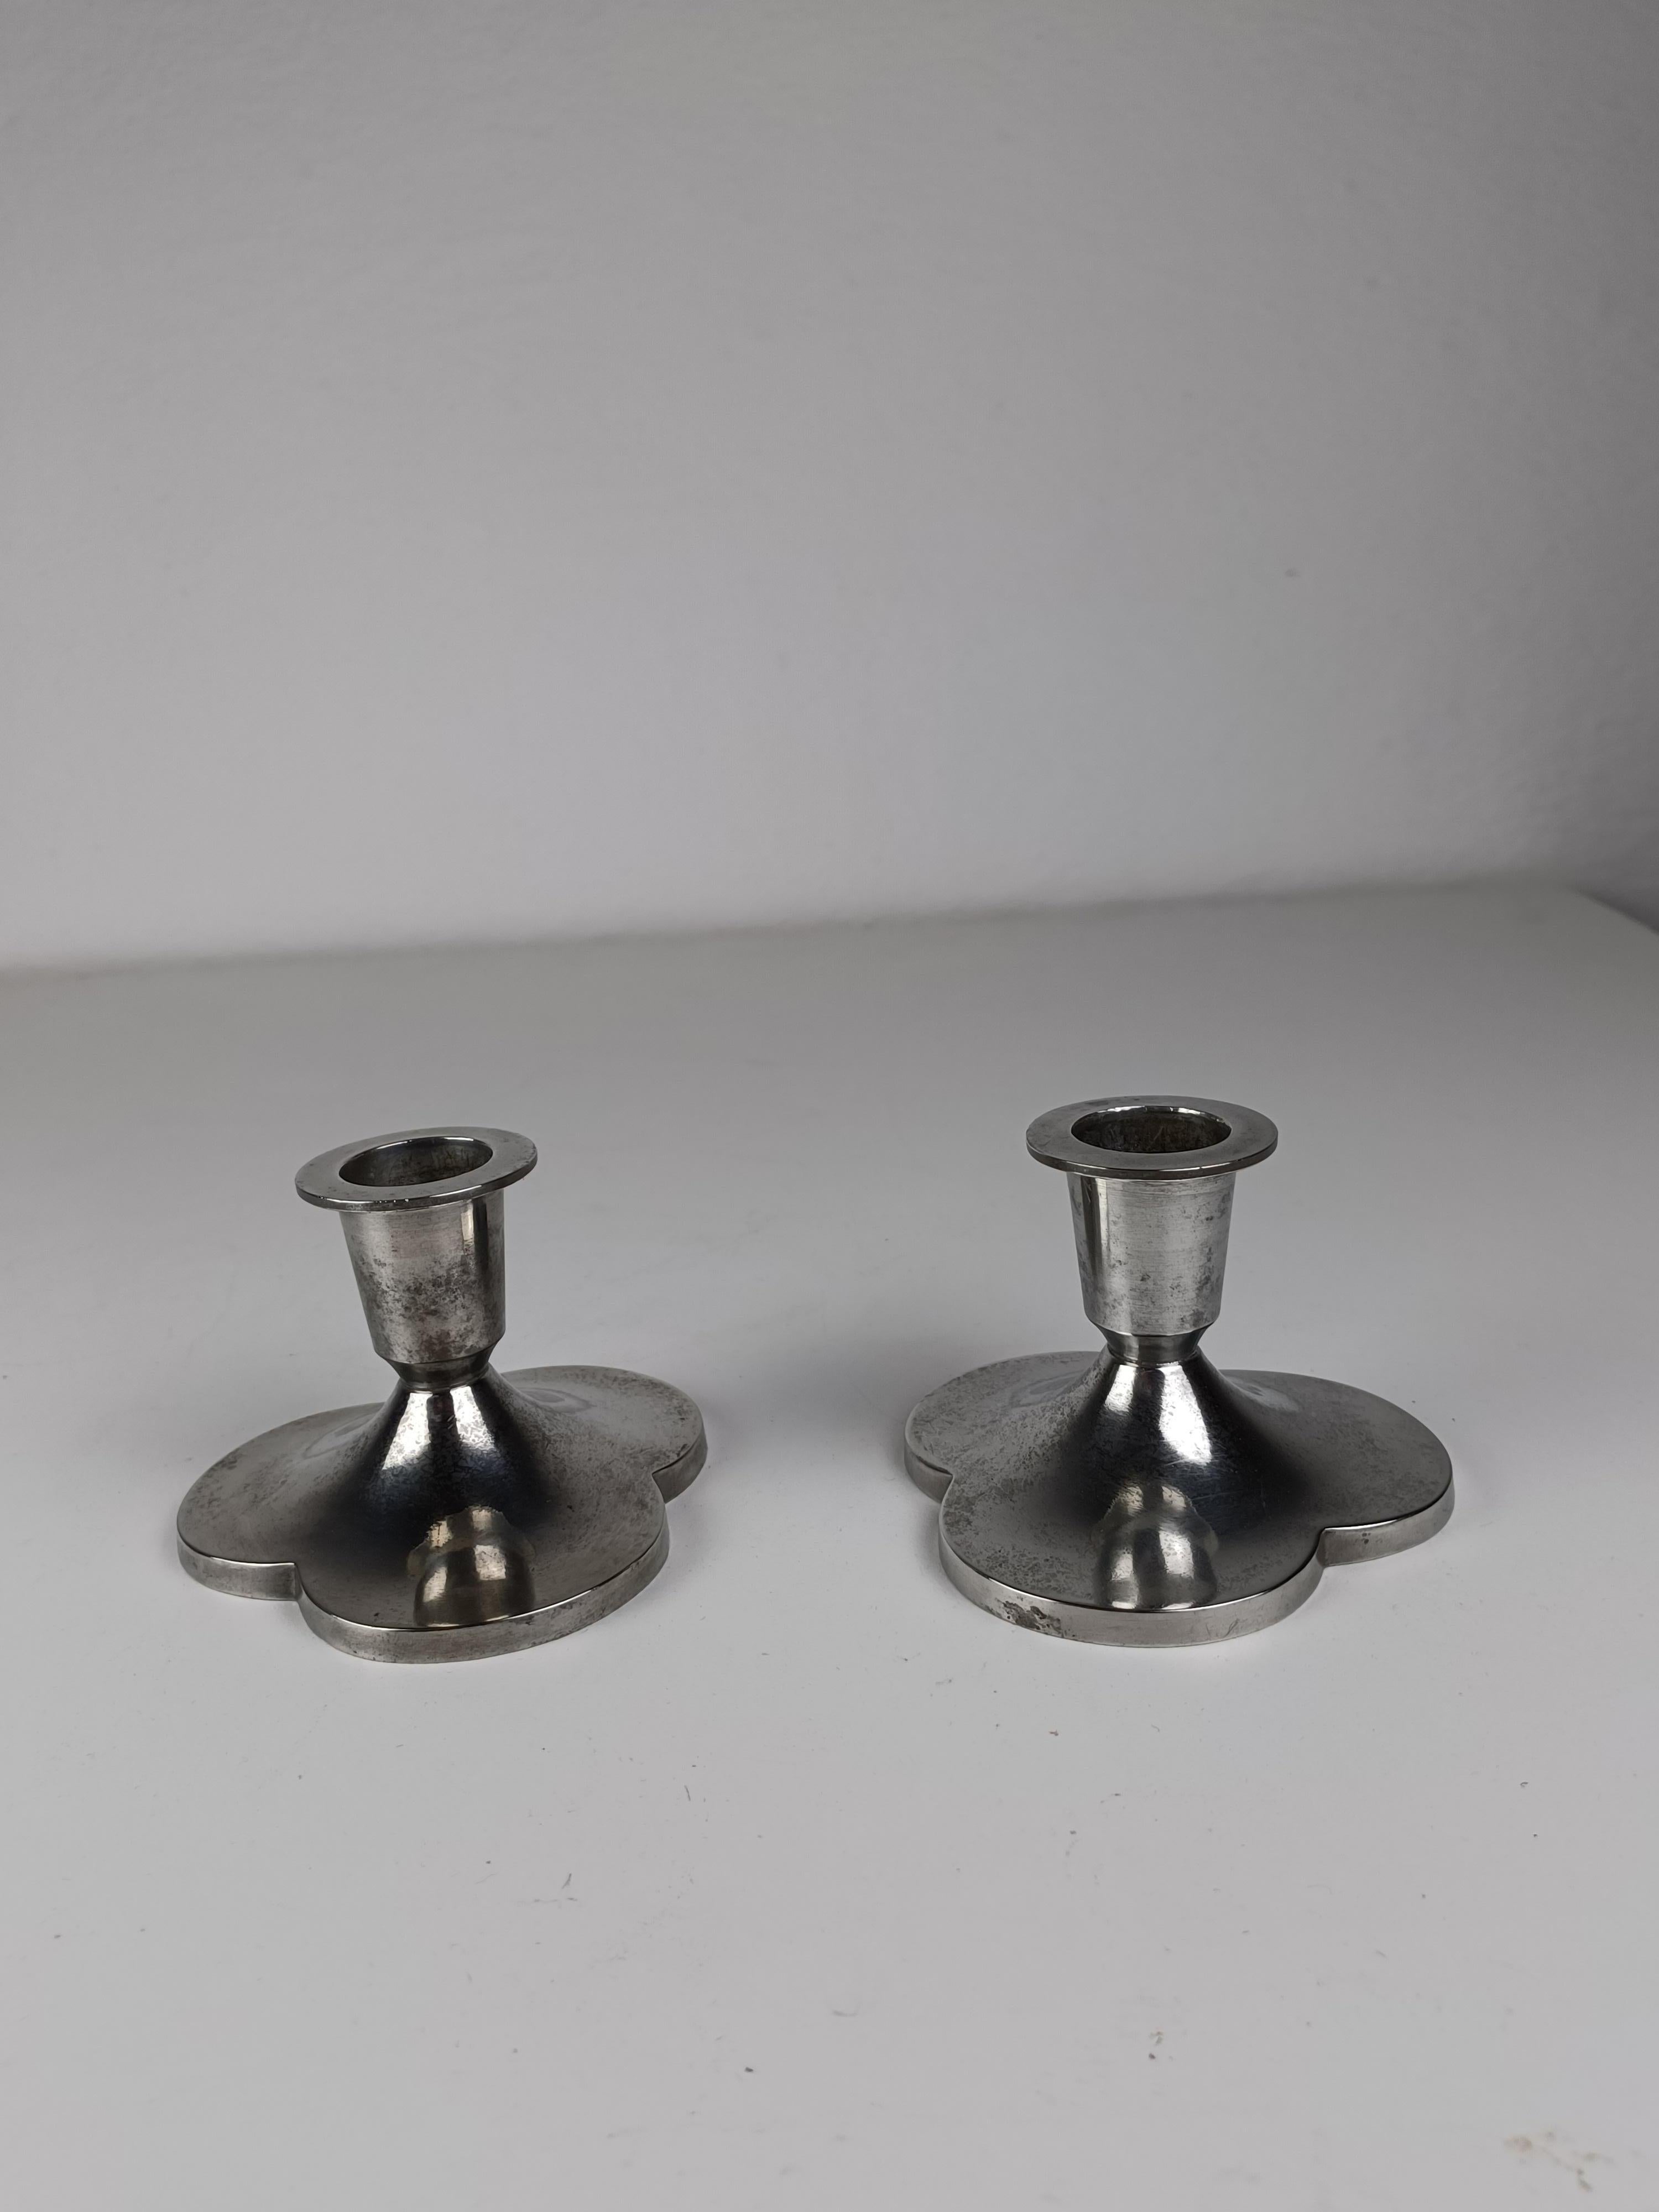 Satz von zwei dänischen Just Andersen Art-Deco-Kerzenhaltern mit drei Kleeblättern aus Zinn, hergestellt von Just Andersen A/S in den 1930er Jahren.

Die Kerzenhalter sind in gutem Vintage-Zustand und mit Just gekennzeichnet. Andersens